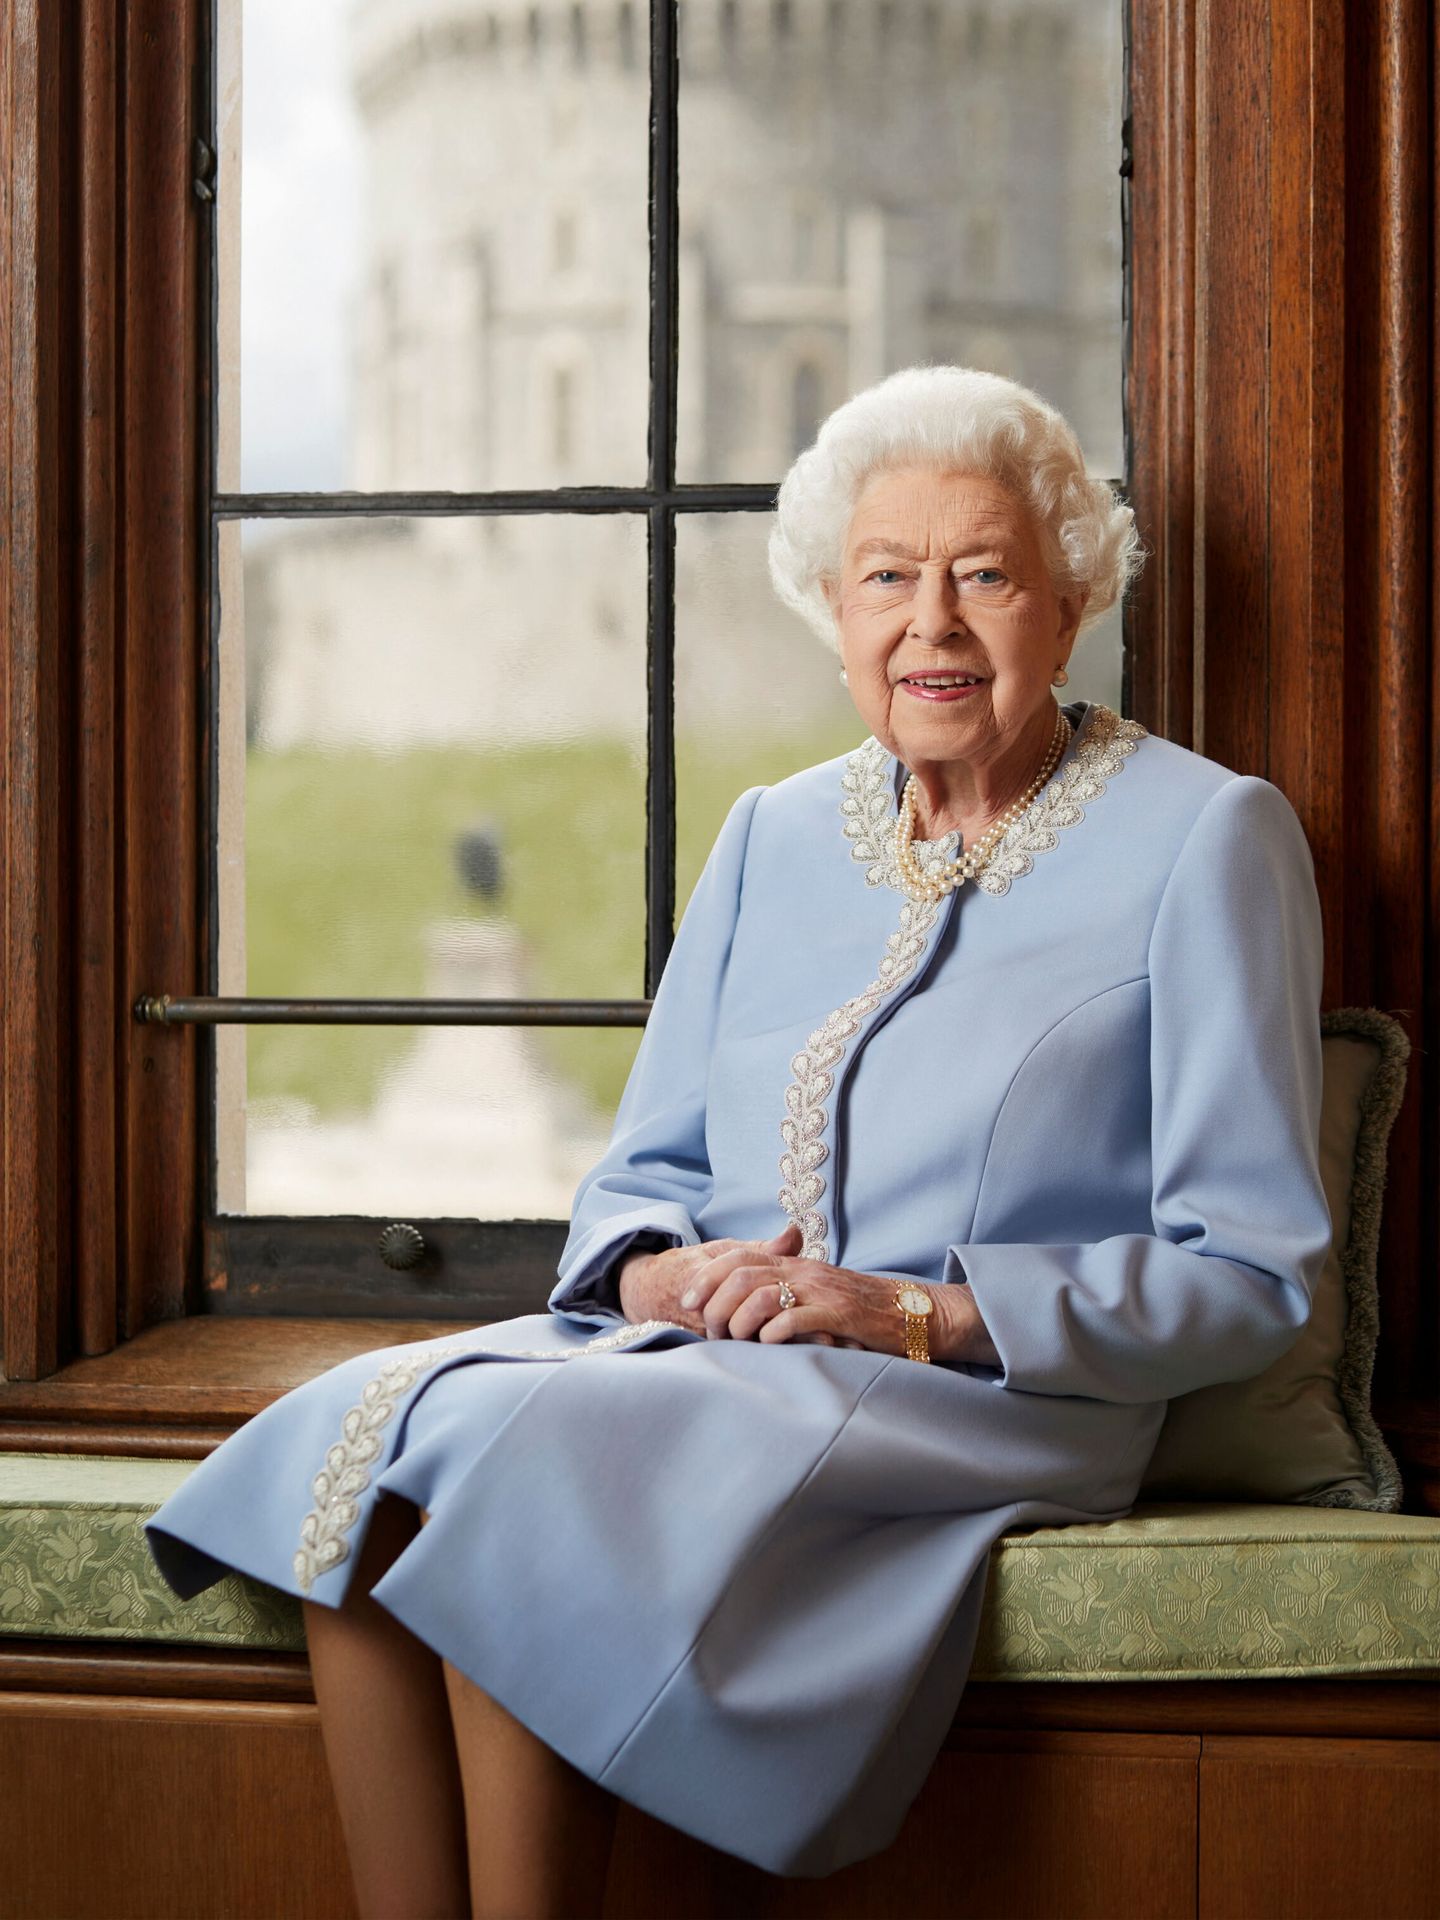 El retrato oficial por el Jubileo de Platino de la reina Isabel. (Casa Real/Ranald Mackechnie)